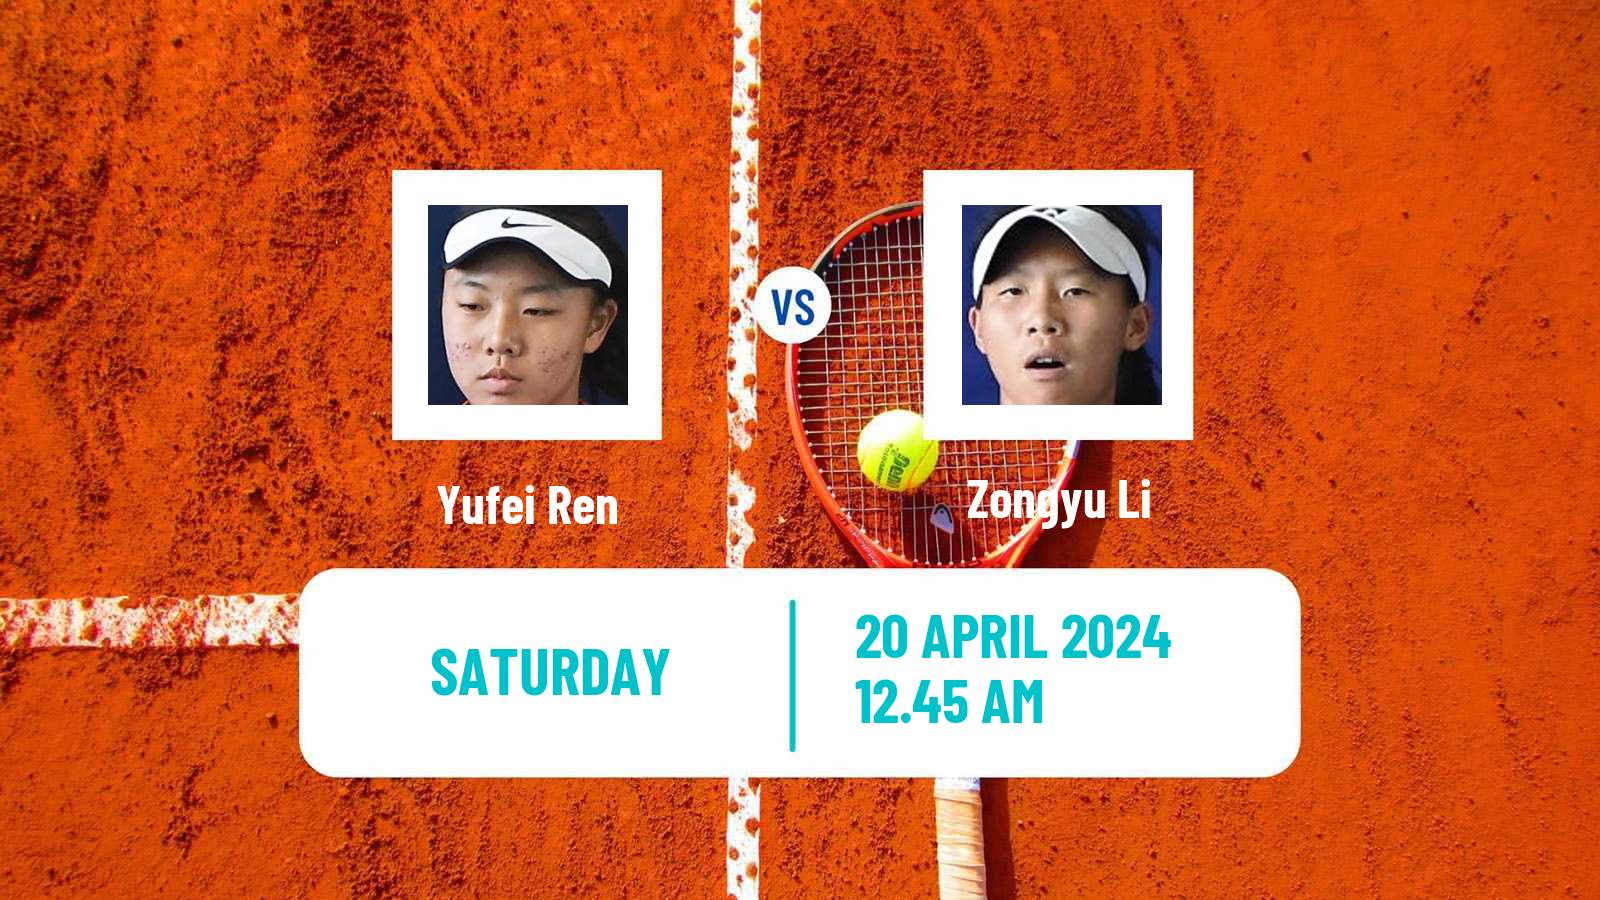 Tennis ITF W50 Shenzhen 2 Women Yufei Ren - Zongyu Li